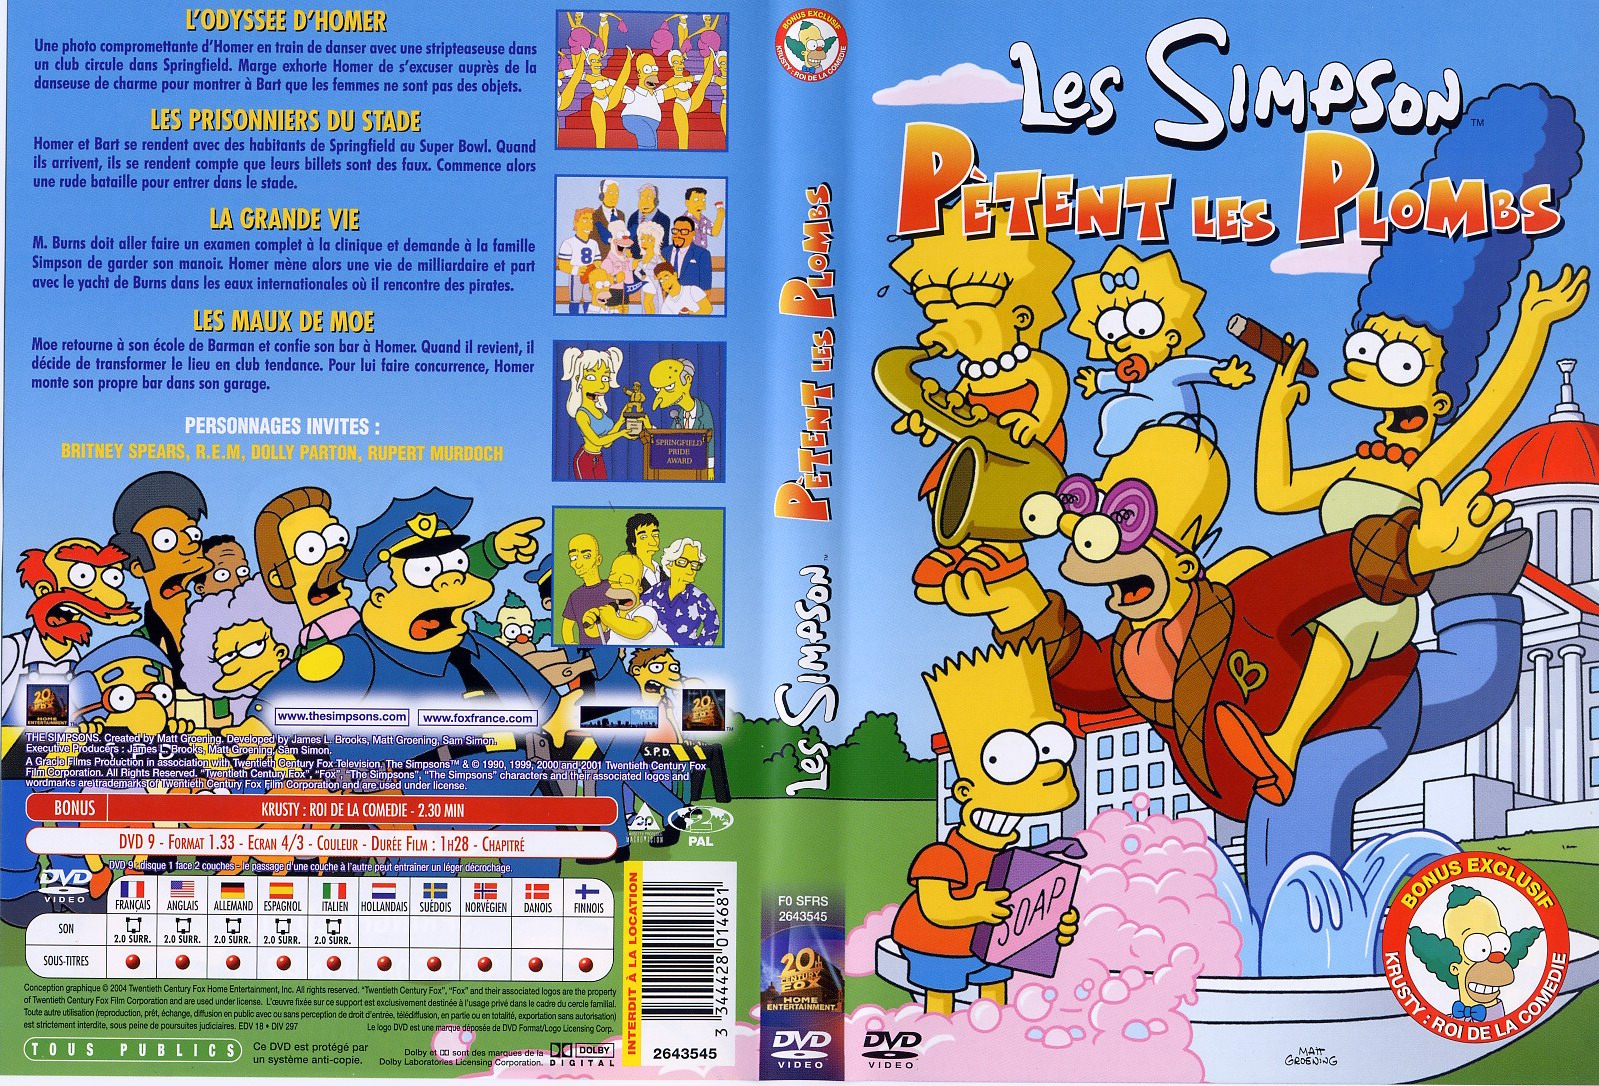 Jaquette DVD Les Simpson ptent les plombs